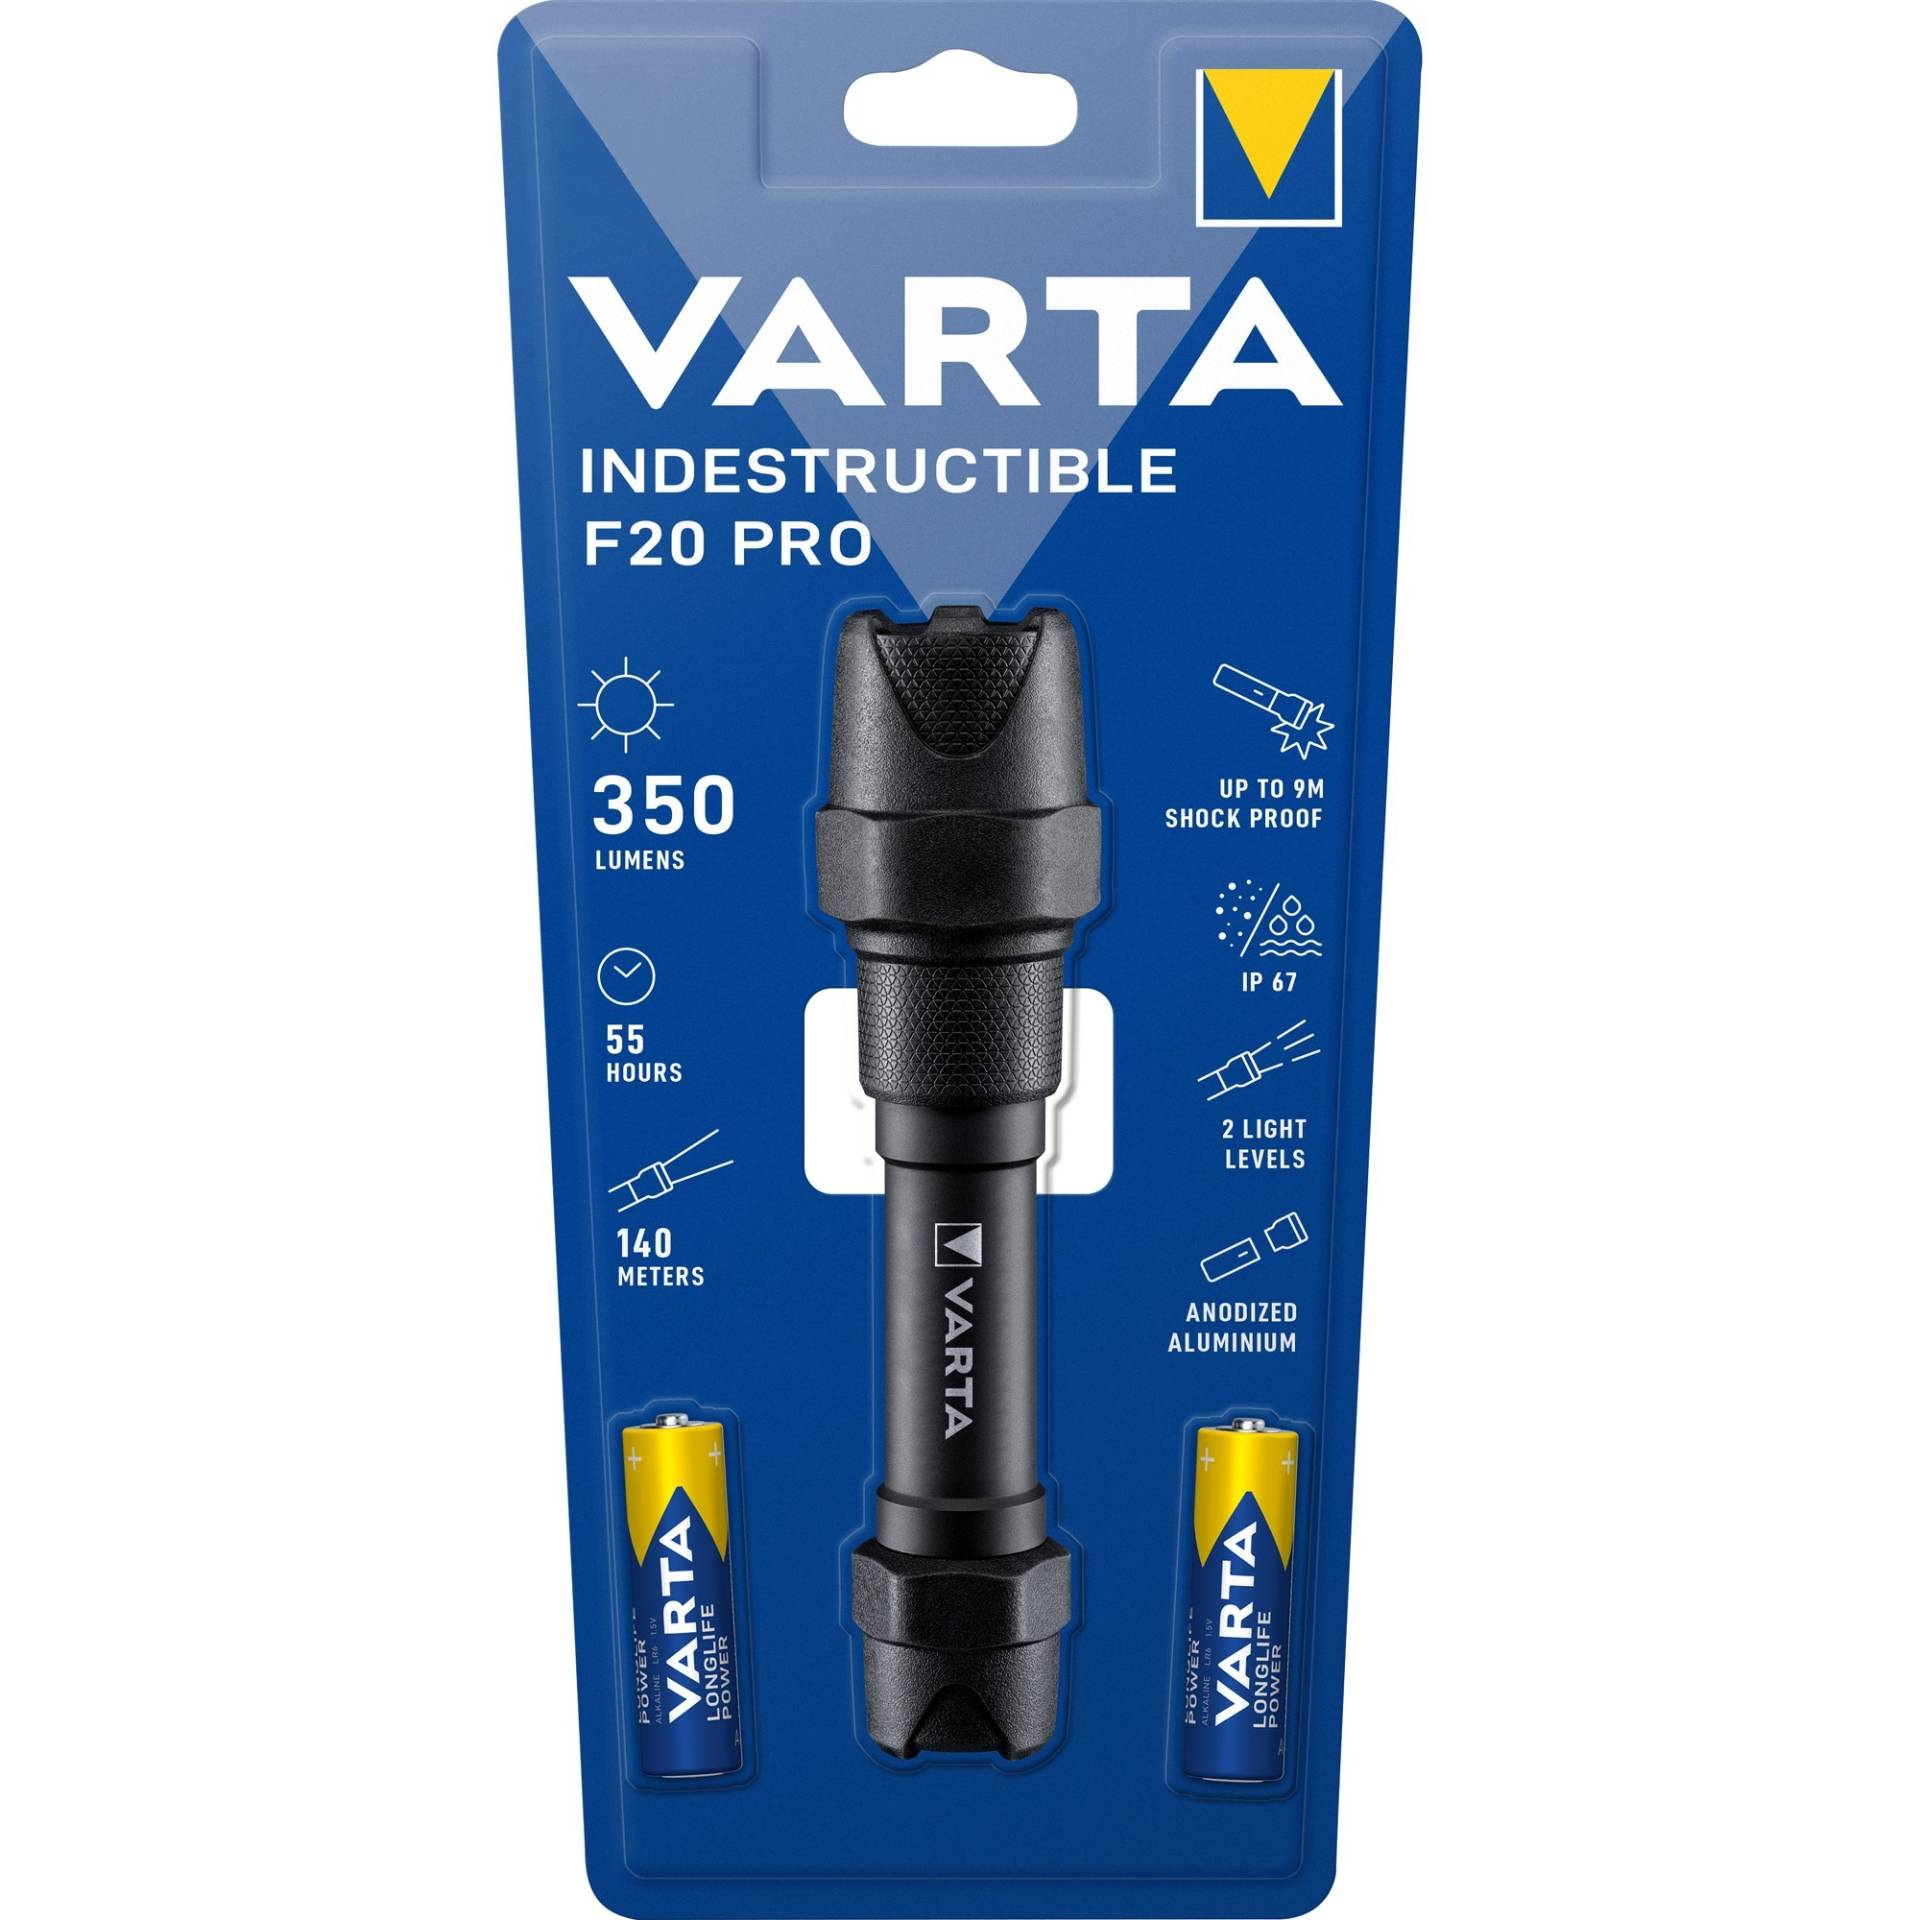 Indestructible F20 Pro, Taschenlampe von Varta